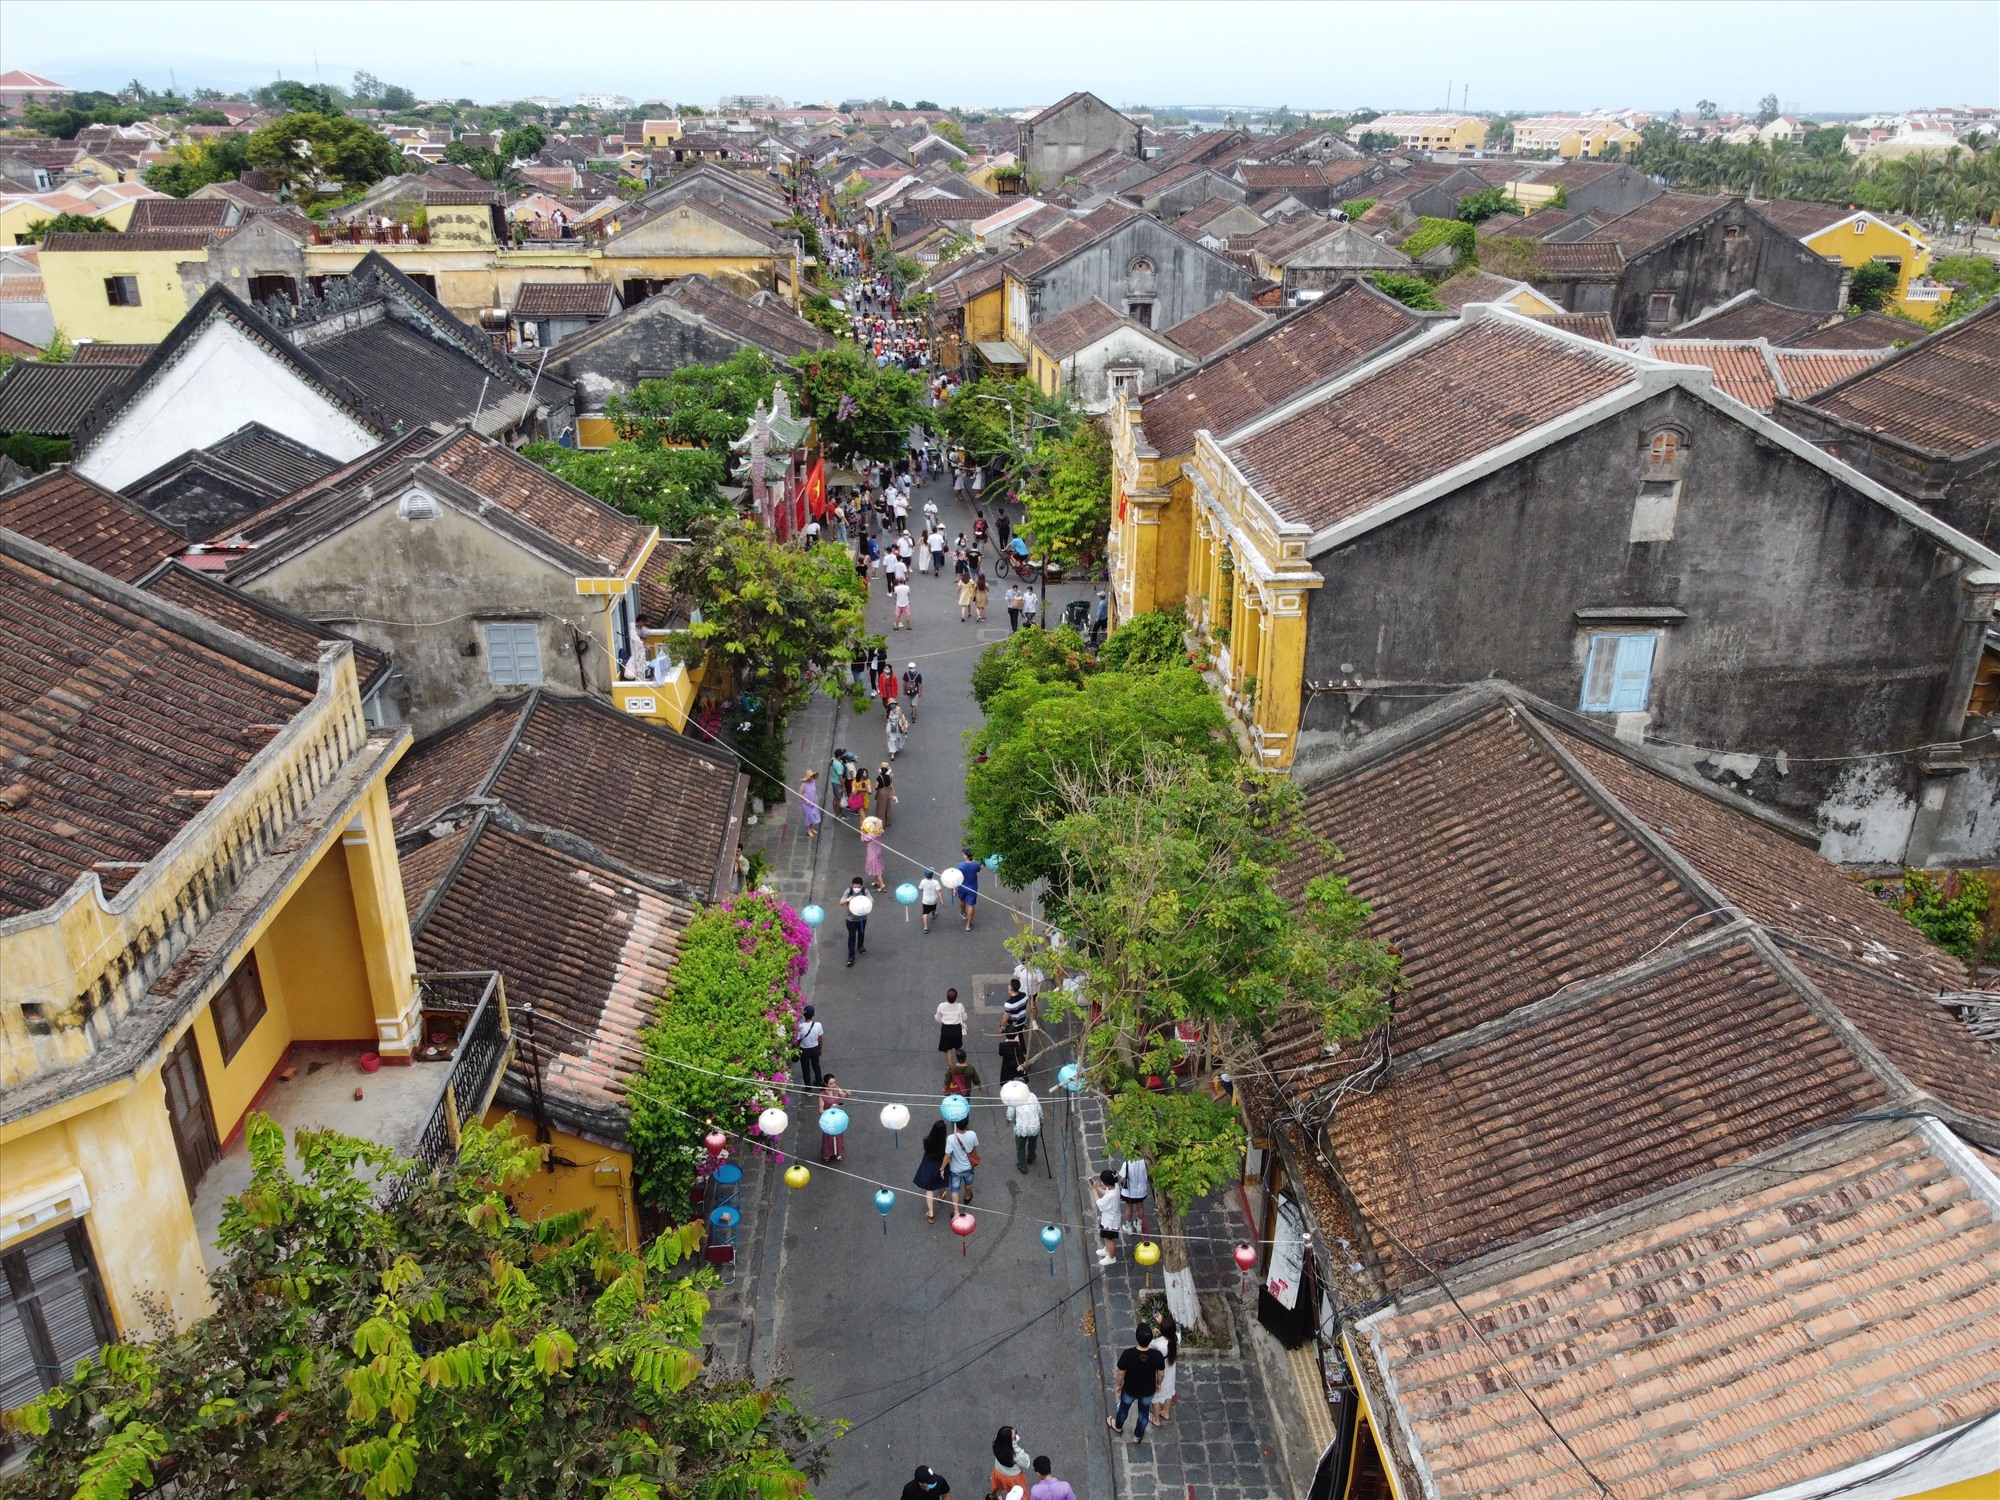 Phố cổ Hội An là minh chứng sinh động cho mối quan hệ giao lưu văn hóa giữa Việt Nam và Nhật Bản.